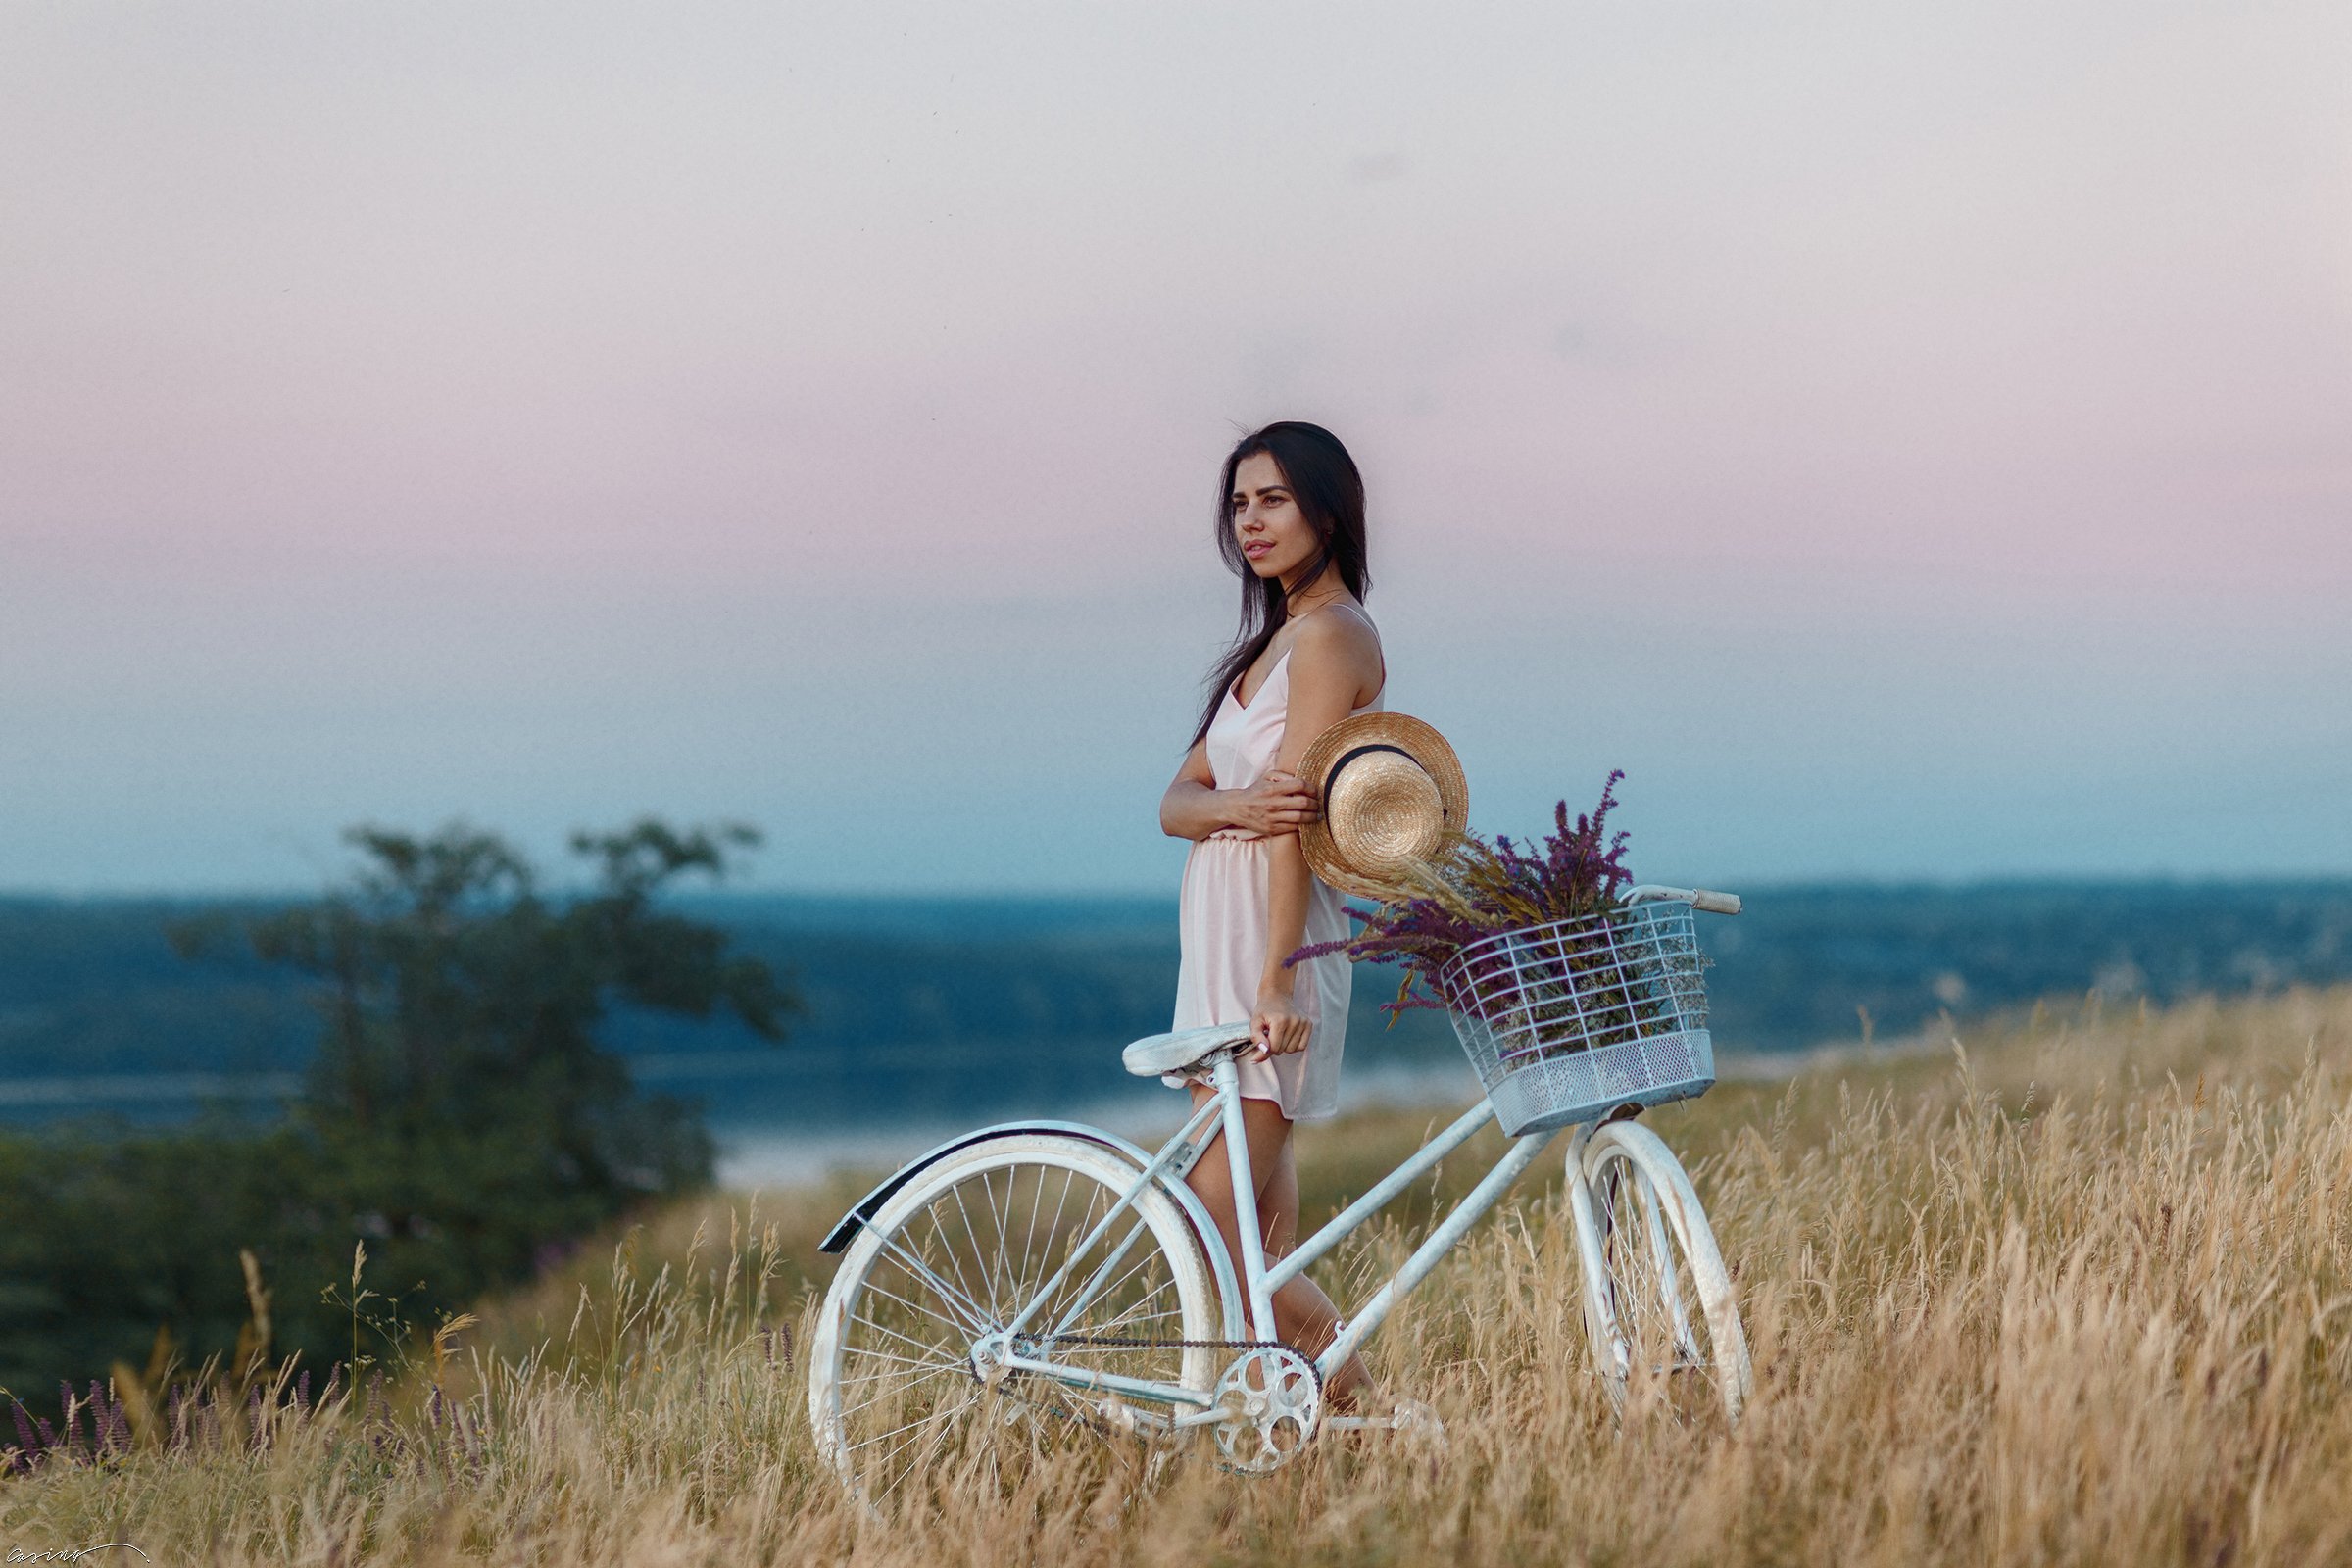 provance, white bike, nature, sunset, summer, flowers, girl, river, Aleksandr (Casing)